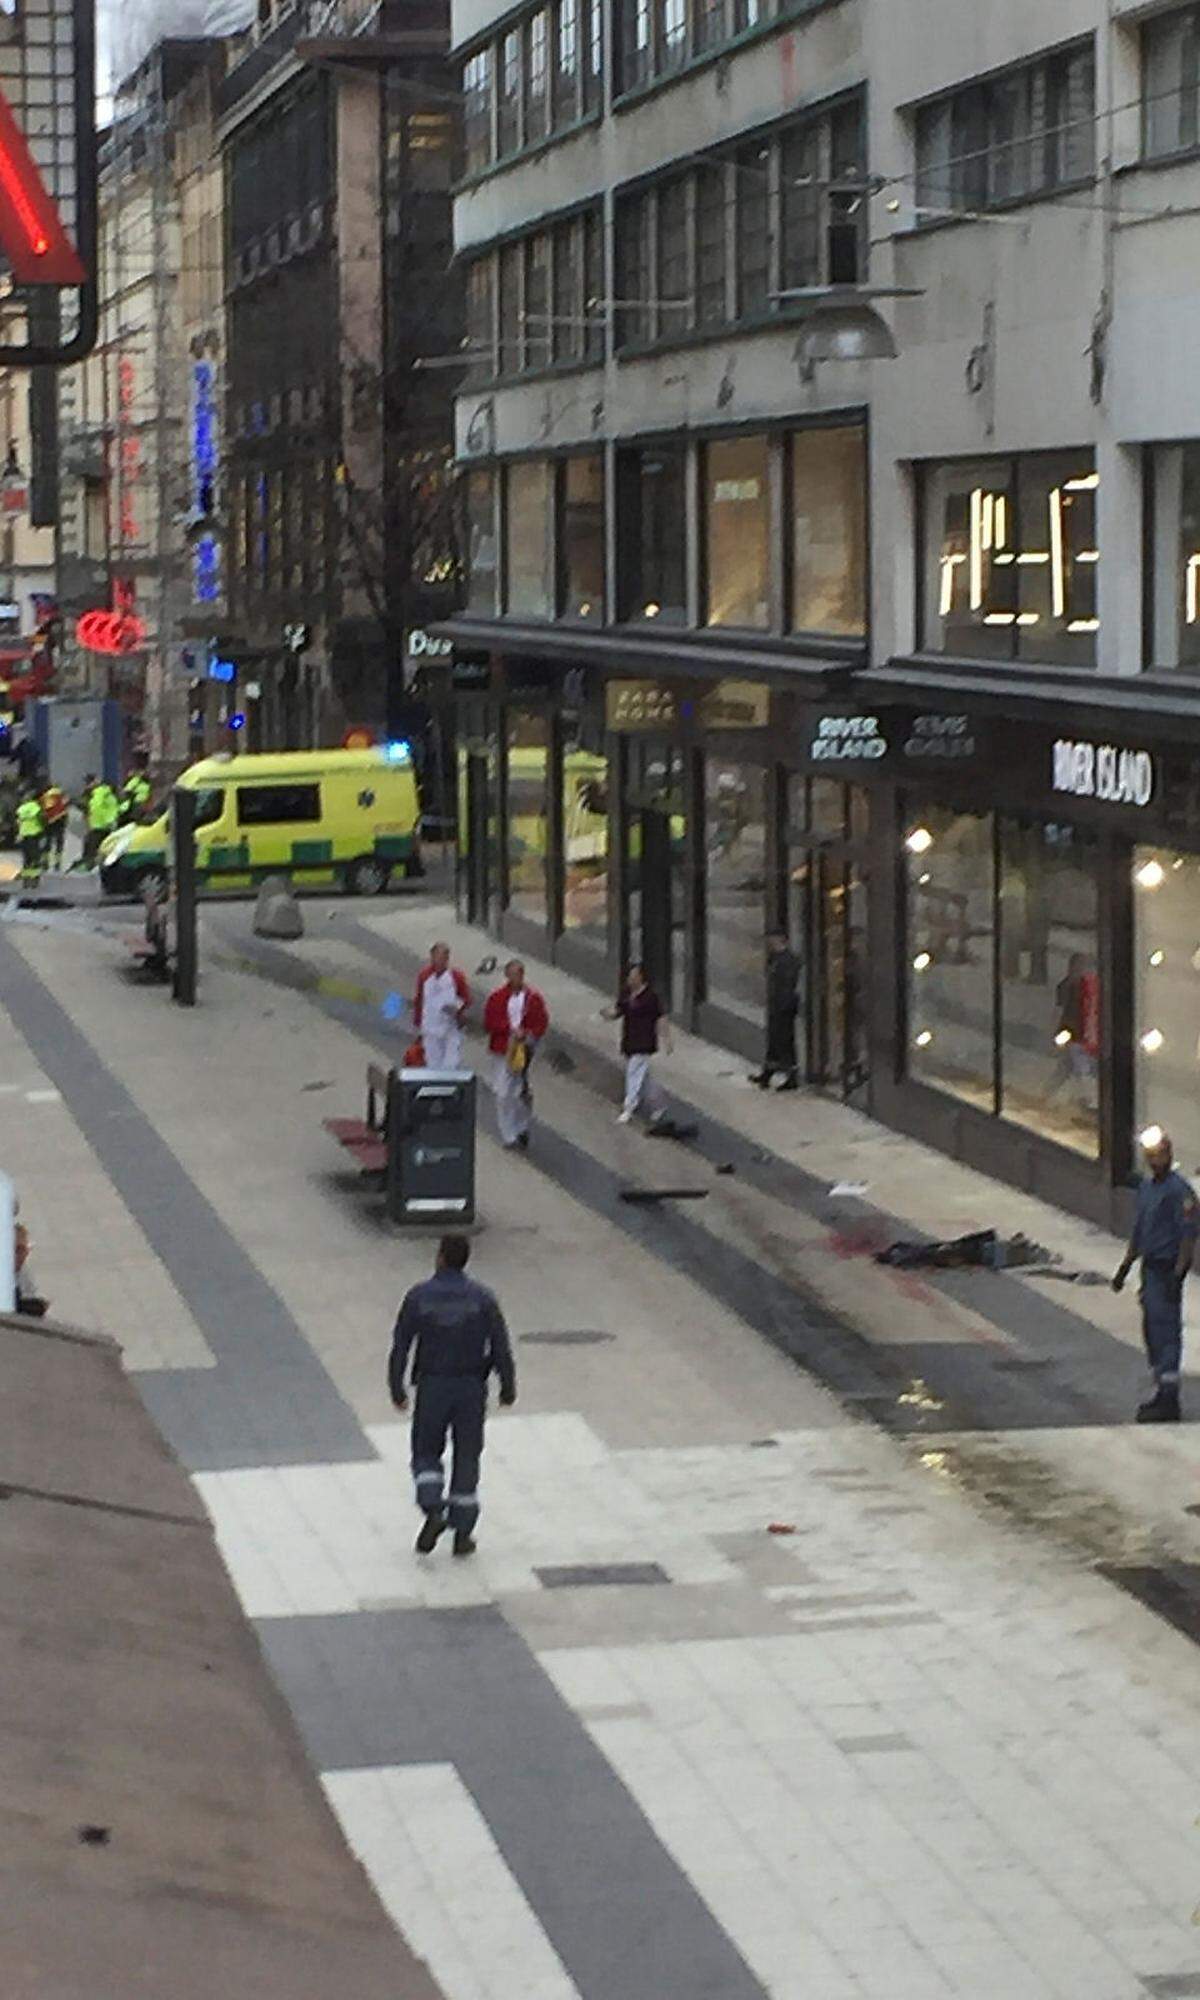 Bilder zeigten die Spuren der Fahrt des Täters durch die Einkaufsstraße.